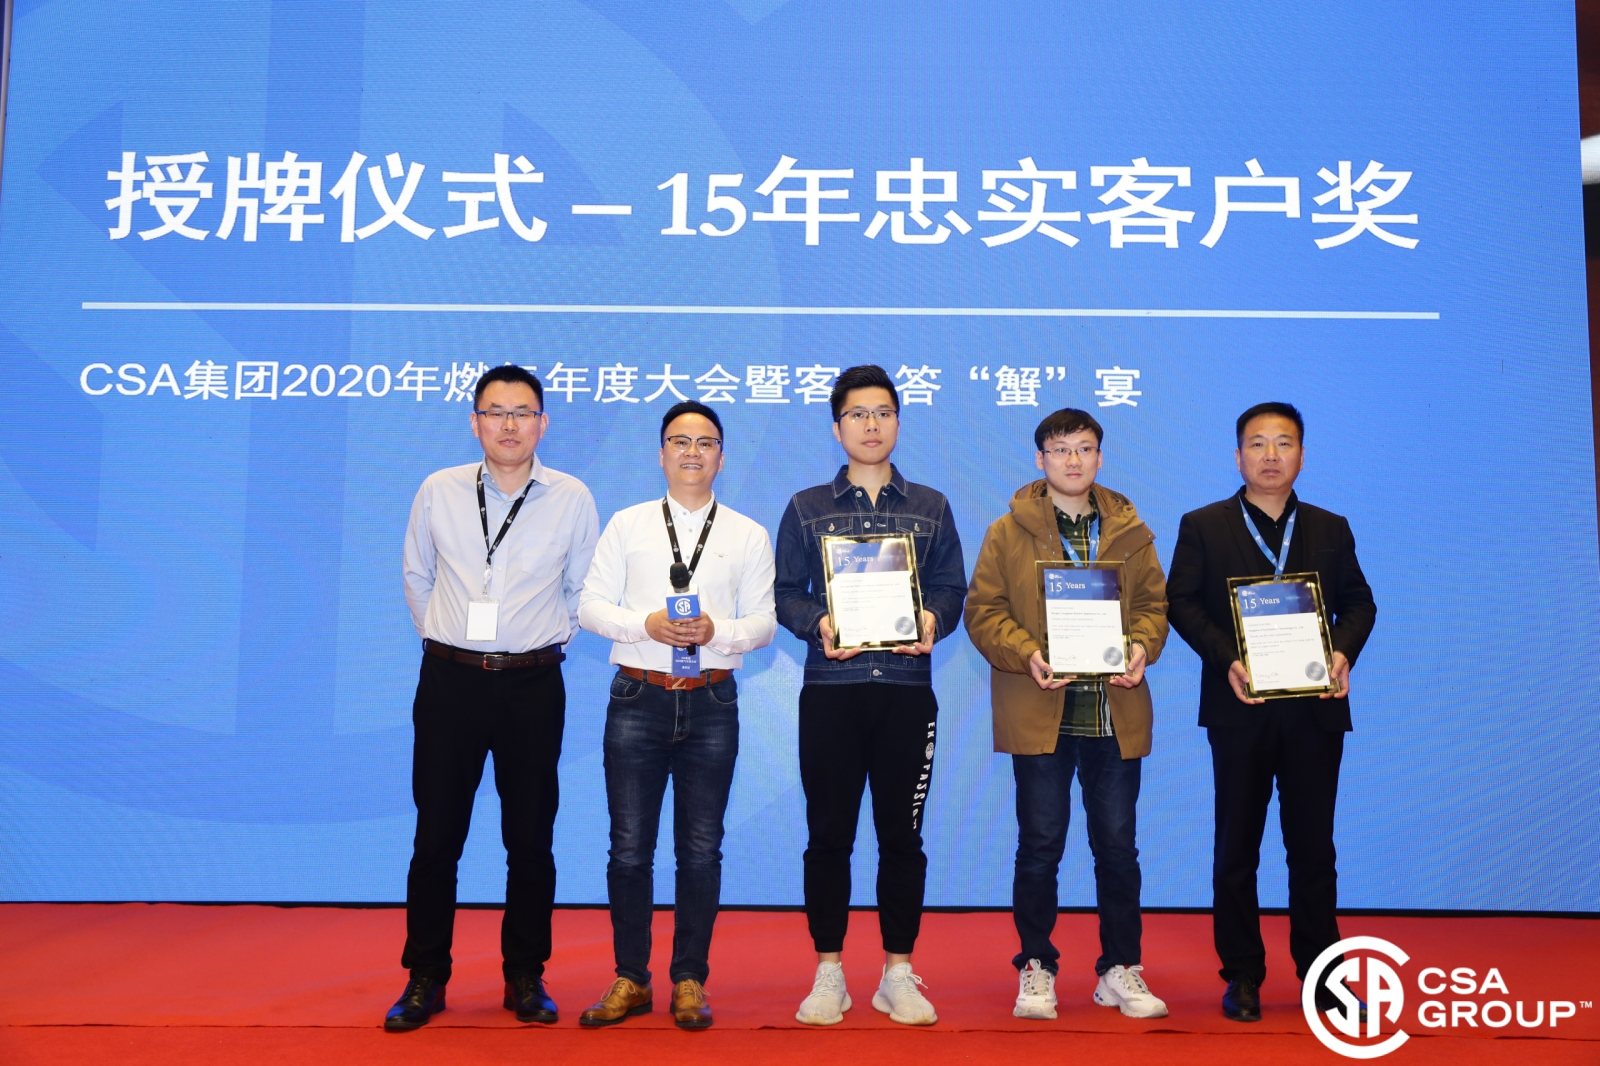 Den årlige konference for CSA Gas Customers blev afholdt i Kunshan